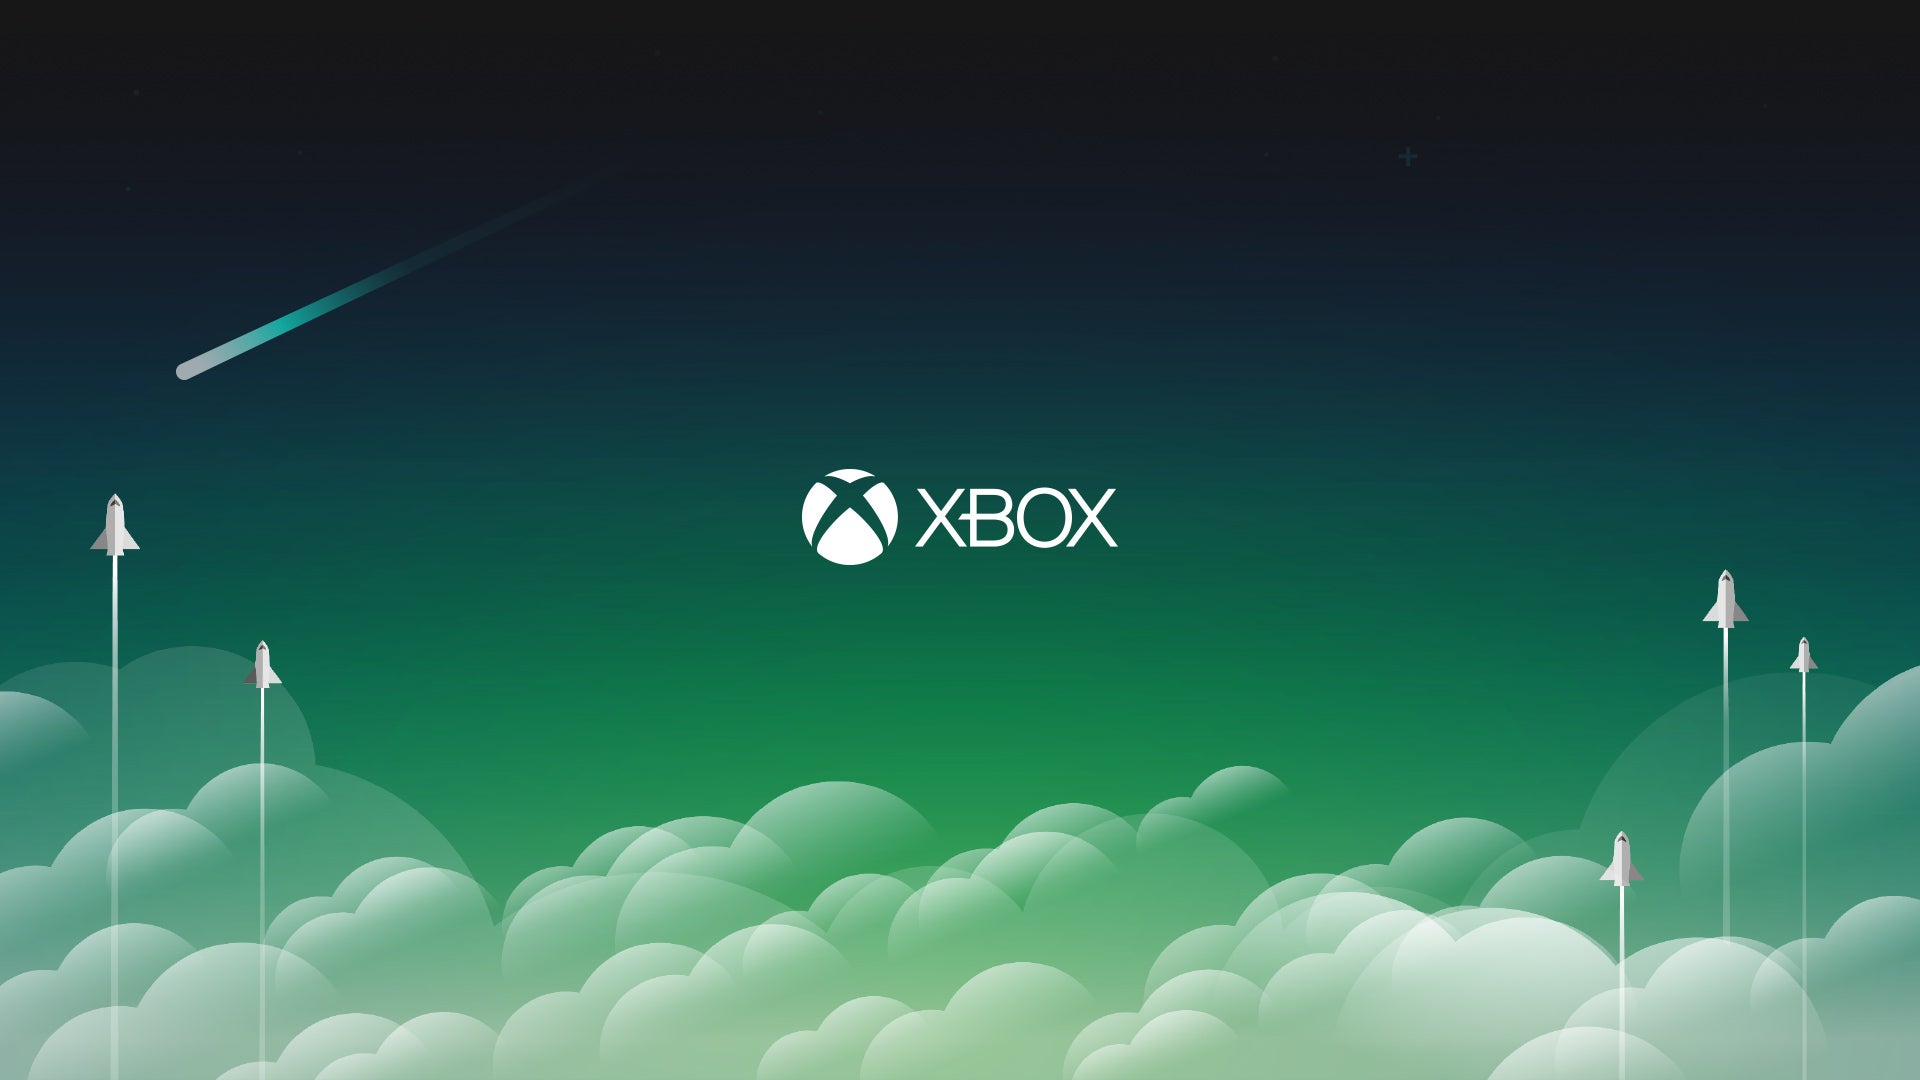 Imagen para Microsoft está trabajando en una herramienta para crear fondos dinámicos para Xbox